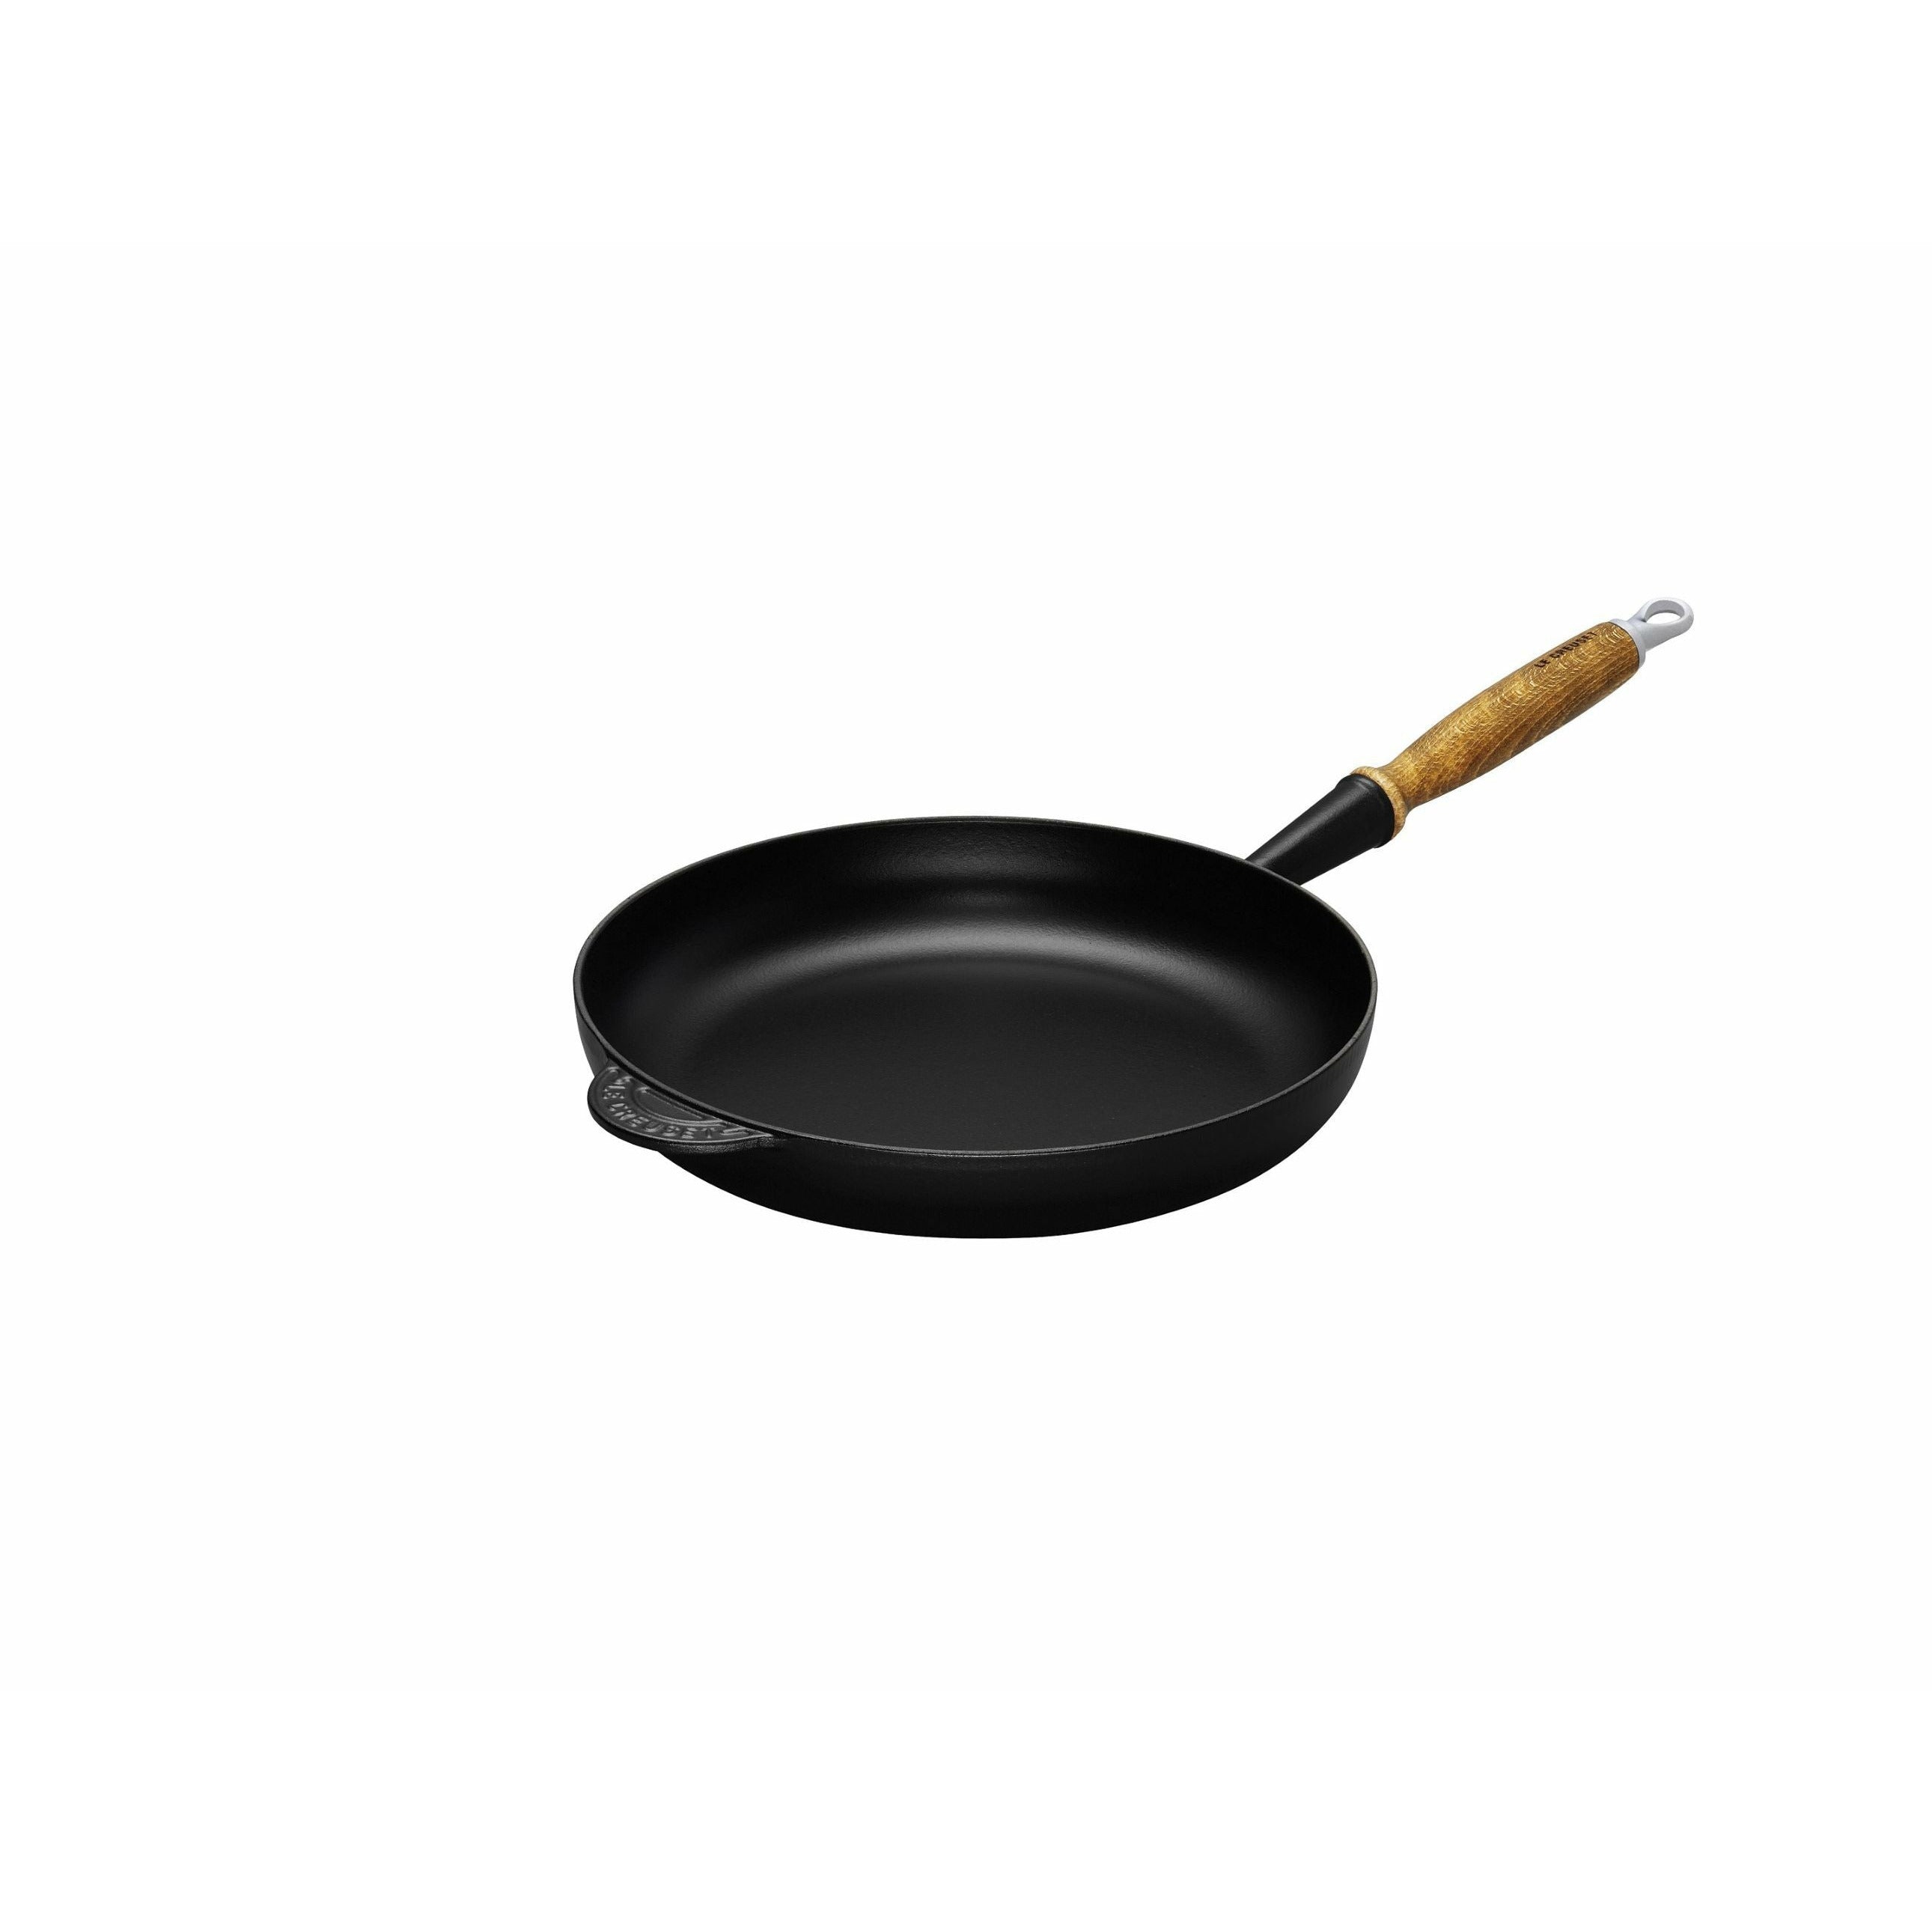 Le Creuset Tradition Frying Pan avec poignée en bois 26 cm, noir